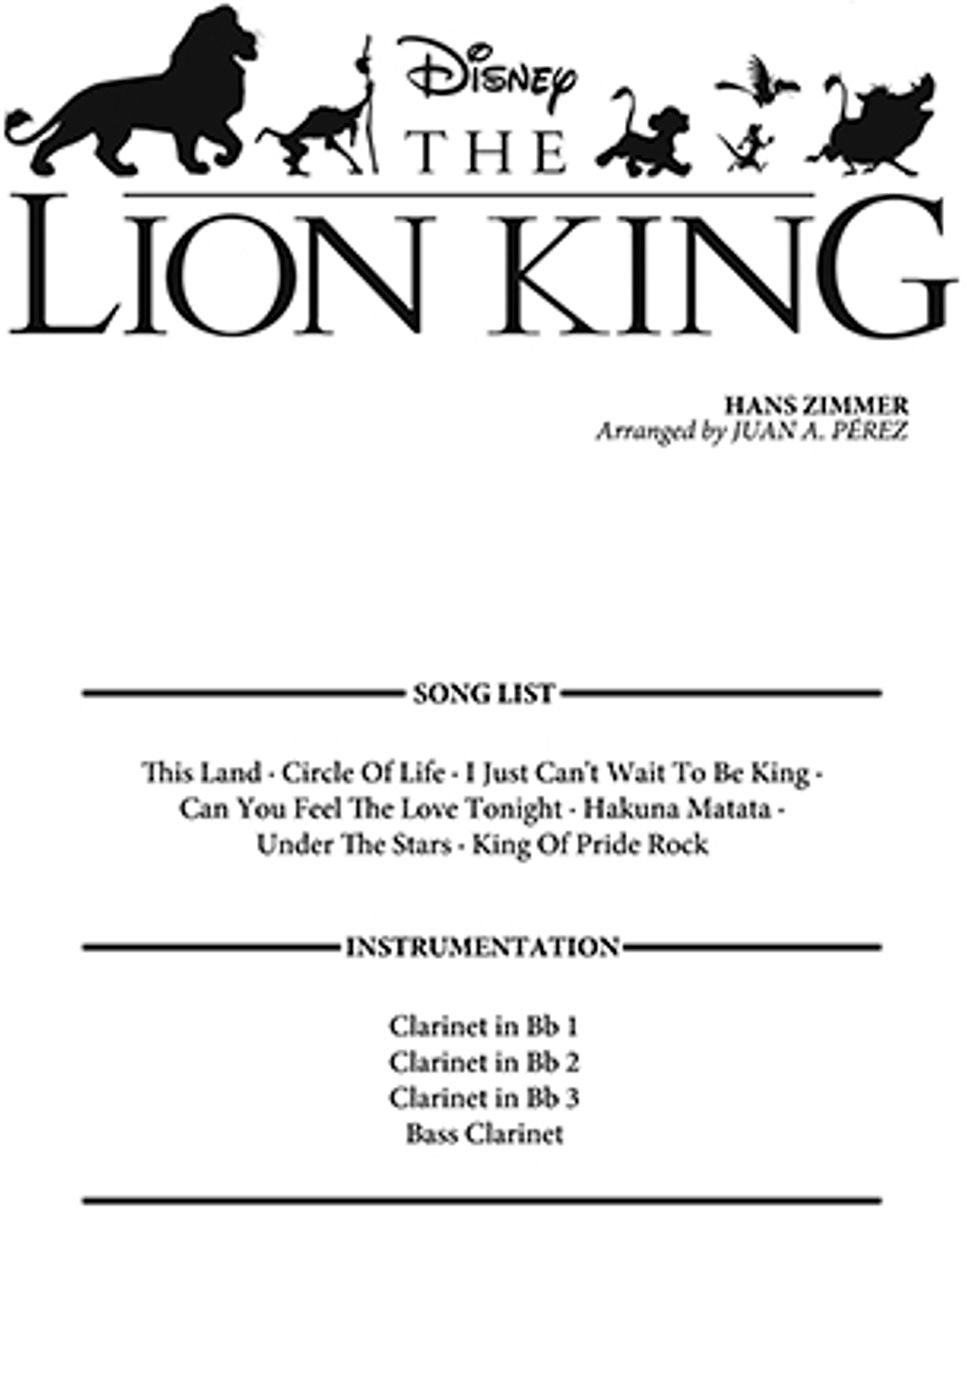 Hans Zimmer - The Lion King (Clarinet Quartet) by Juan A. Pérez